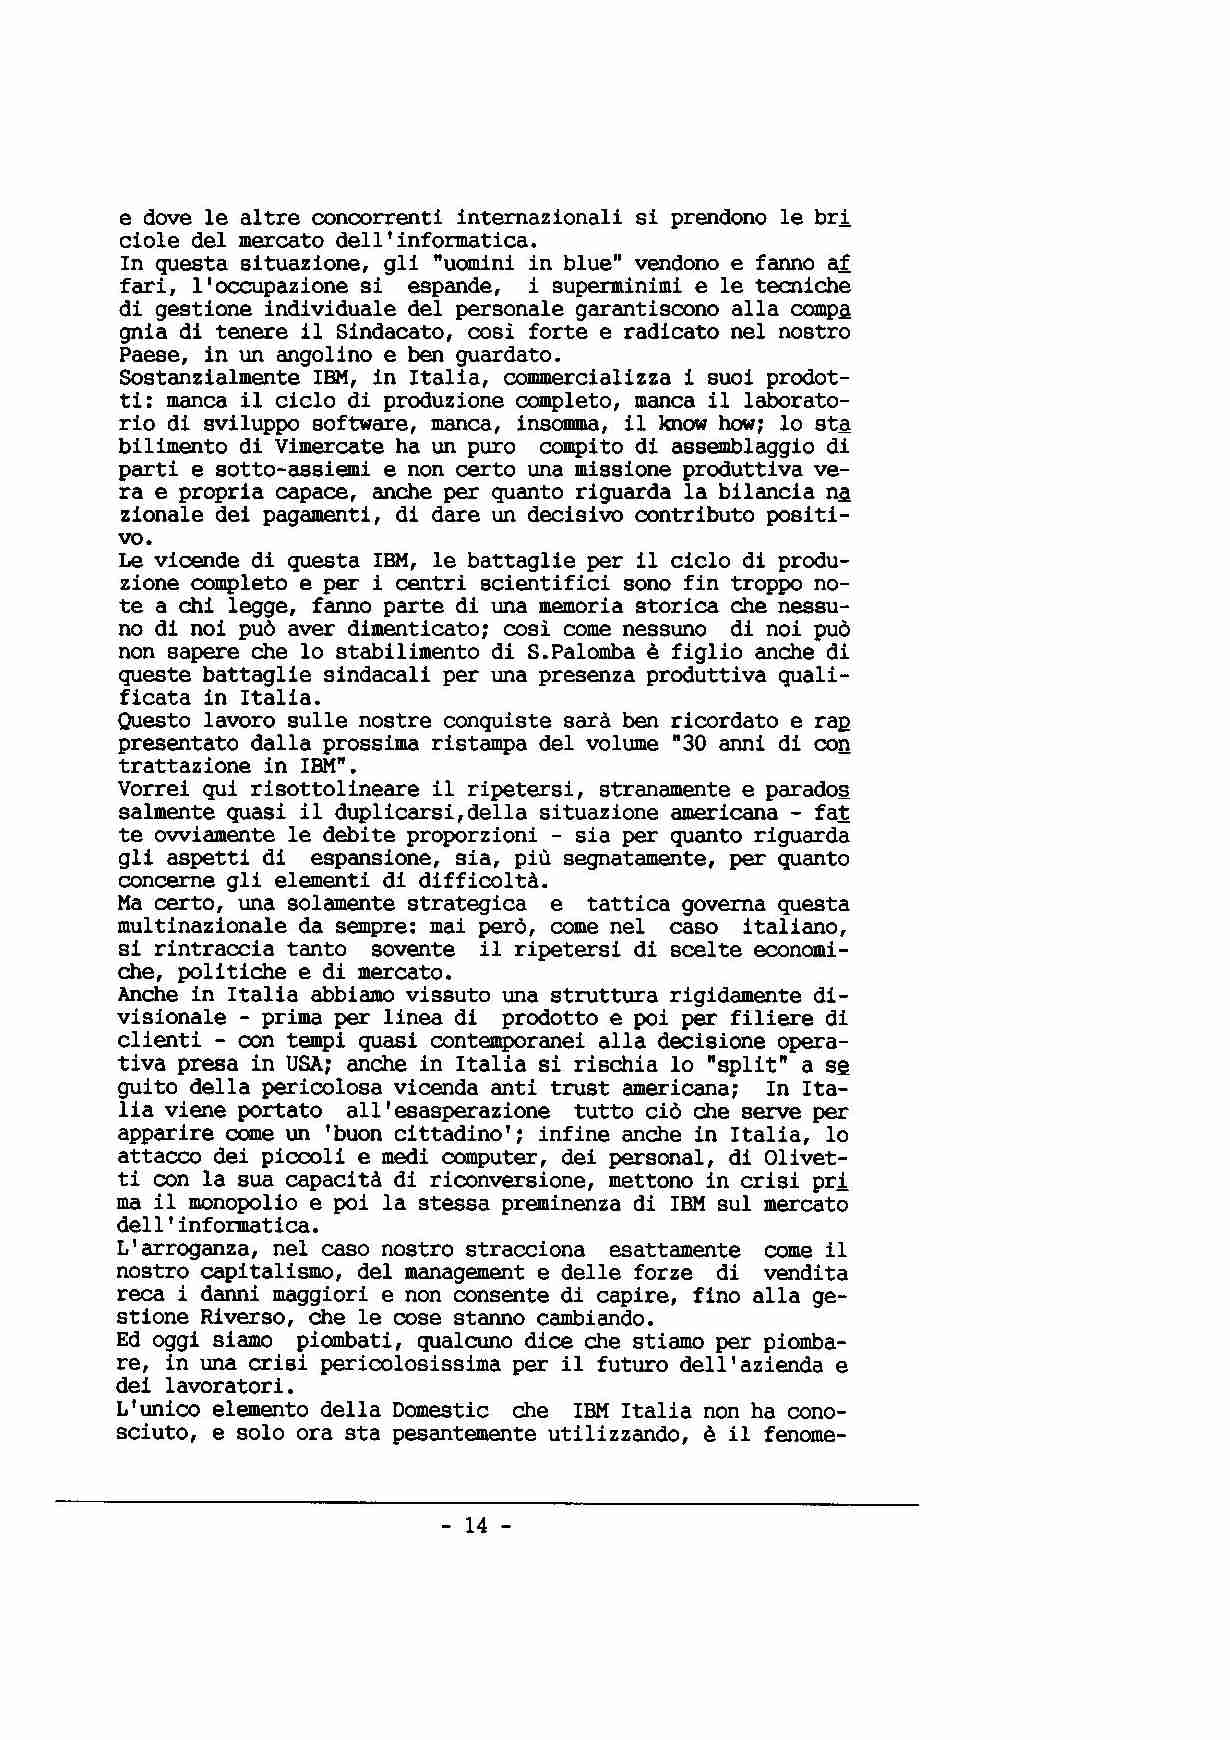 Contributo alla discussione del Coordinamento Nazionale
IBM SEMEA SpA sulla situazione attuale, a cura di A. Riboni - p. 14